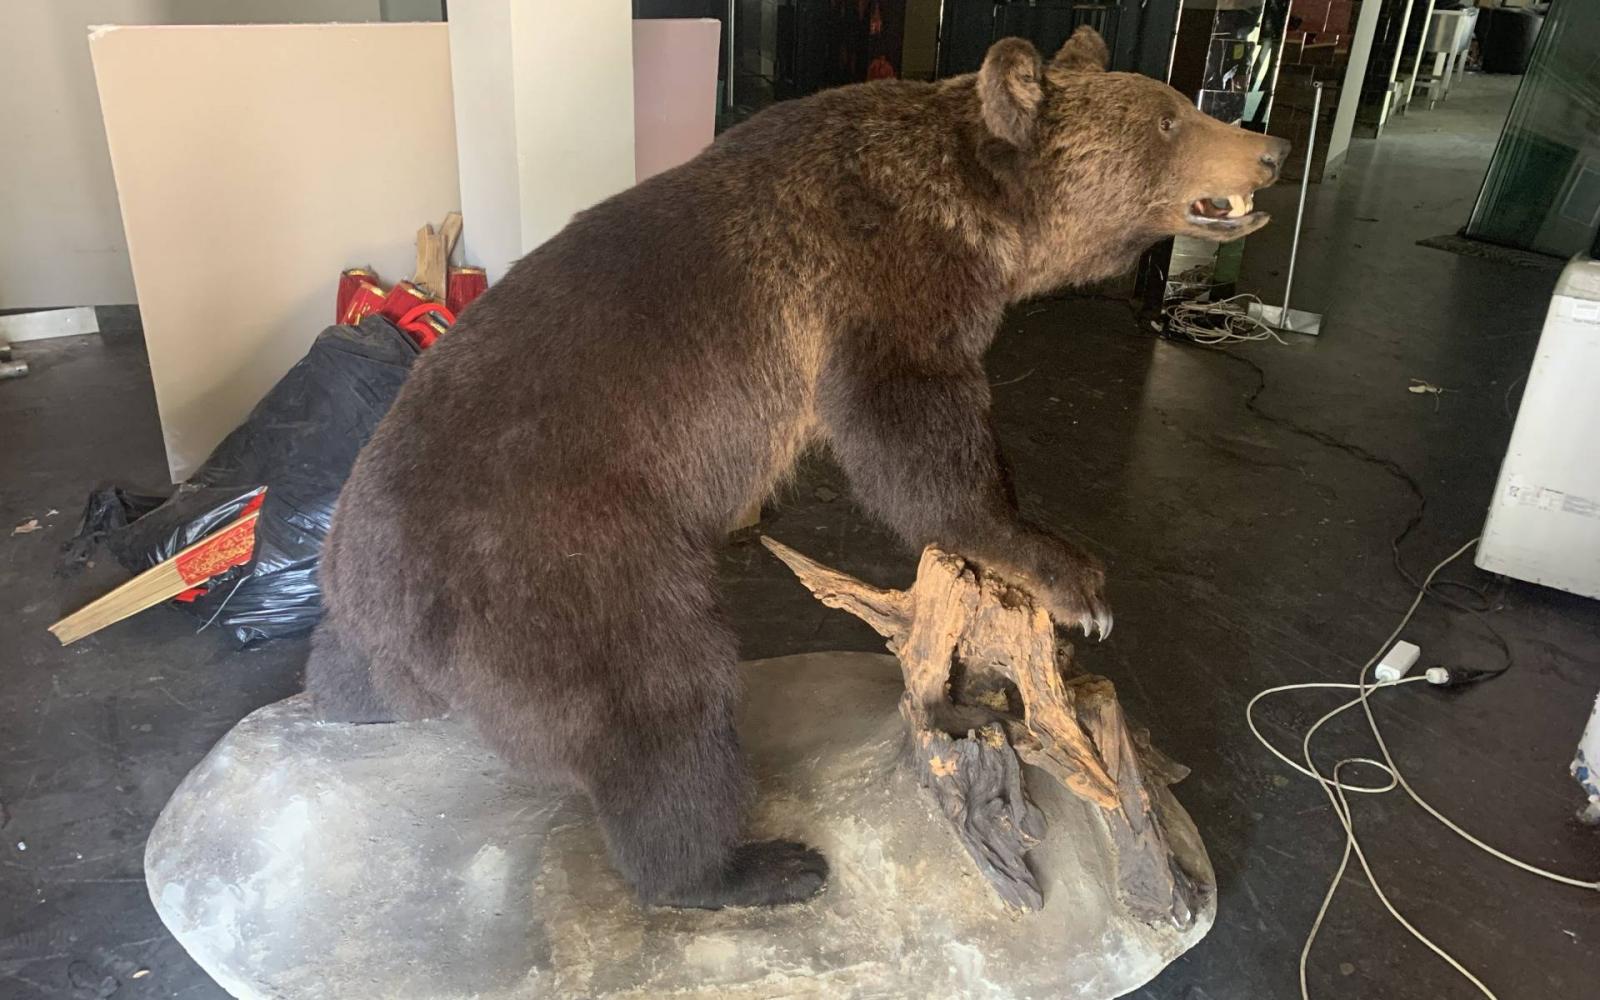 A sümegi önkormányzathoz került a kitömött medve, ami miatt elítélték az egyik fideszes képviselőt